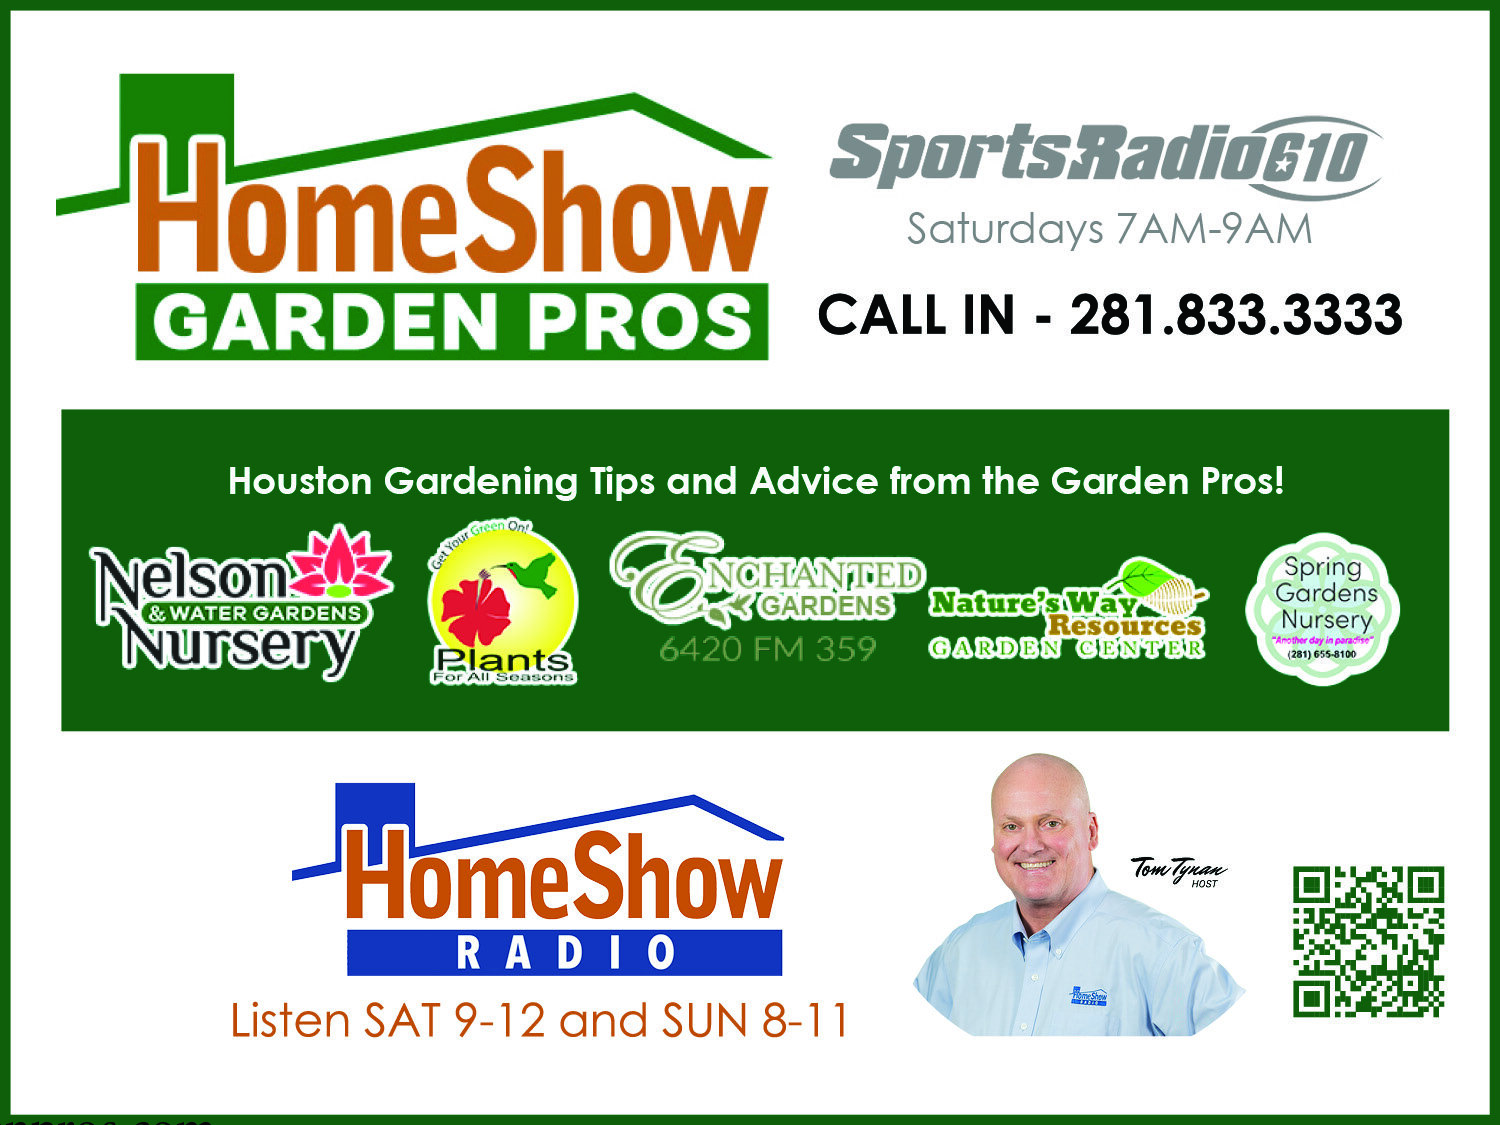 Home_Show_Garden_Pros_Ad.jpg